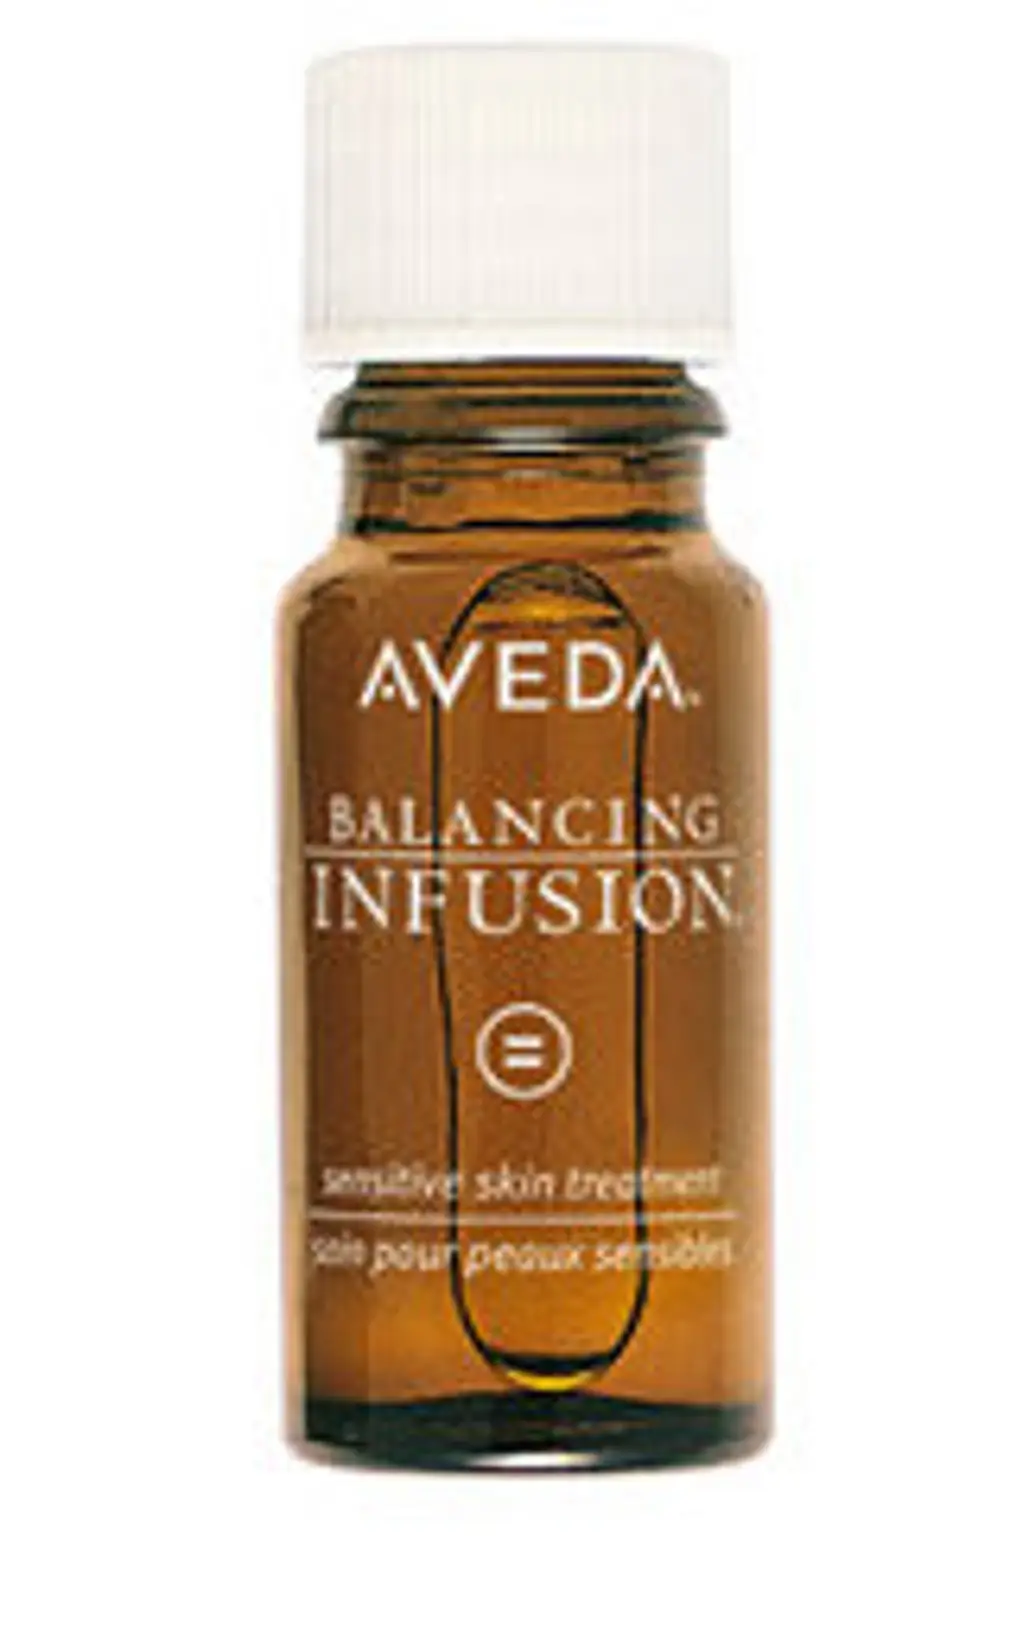 Aveda Balancing Infusion for Sensitive Skin